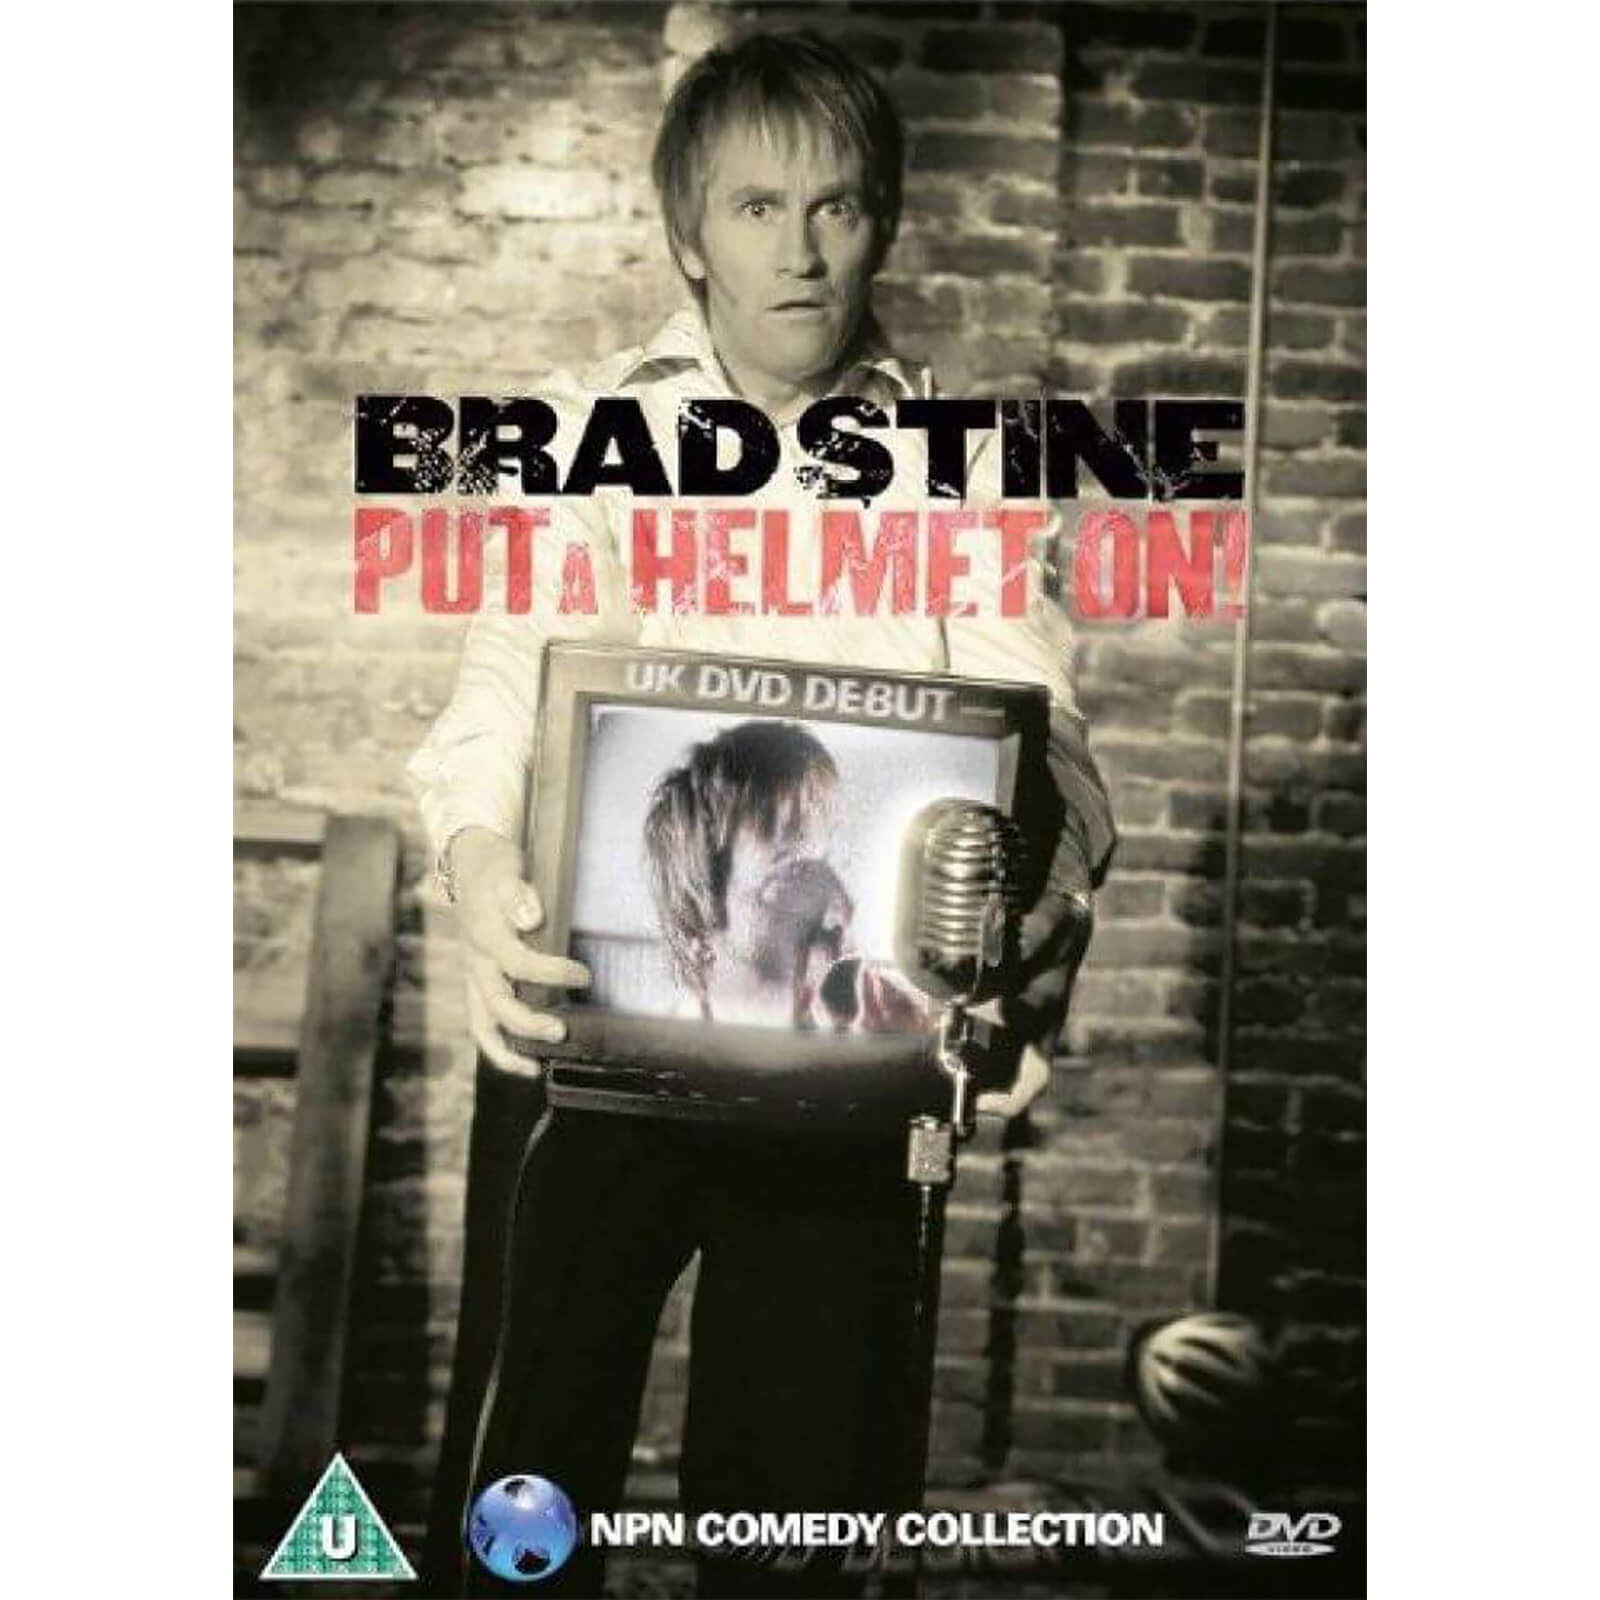 Put A Helmet On: UK DVD Debut von Cornerstone Media